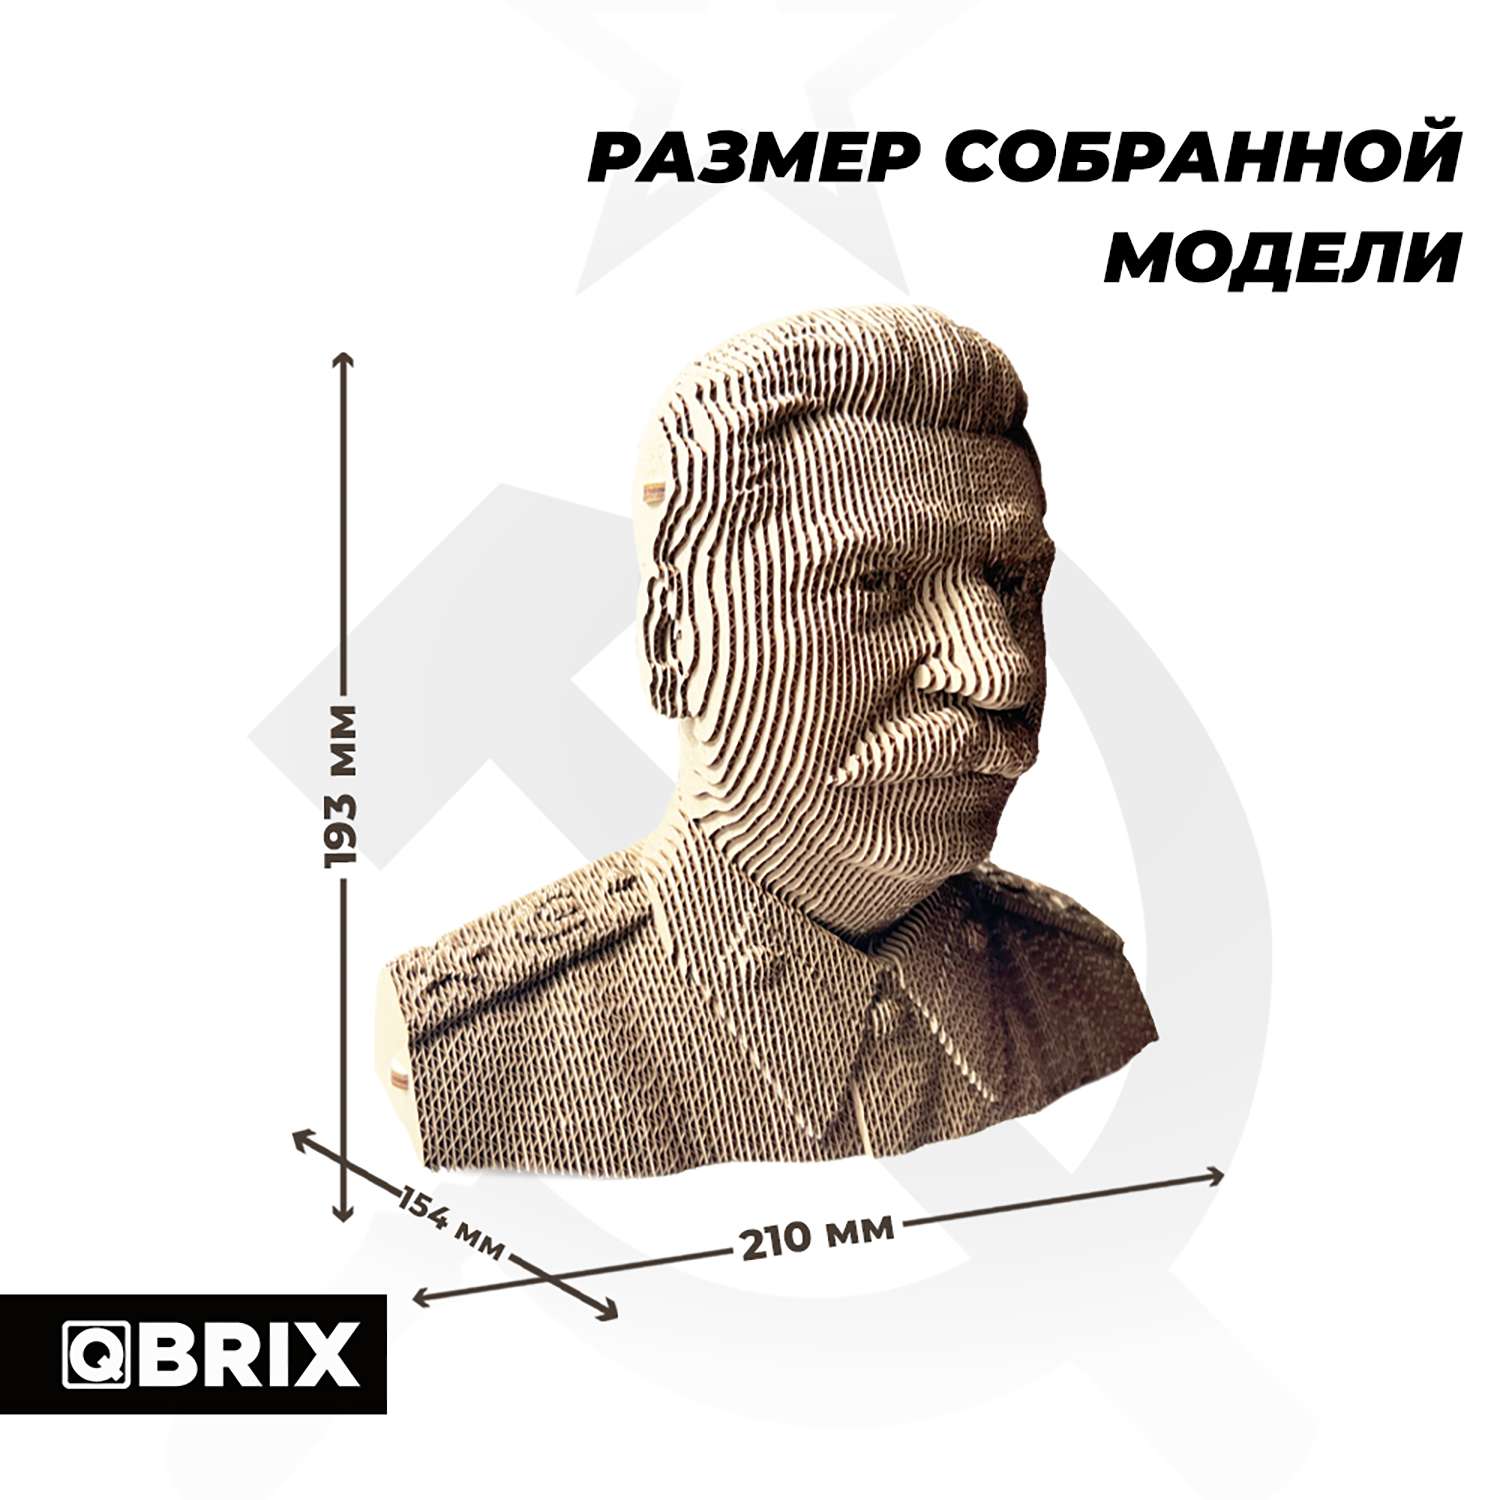 Конструктор QBRIX 3D картонный Сталин 20033 20033 - фото 2